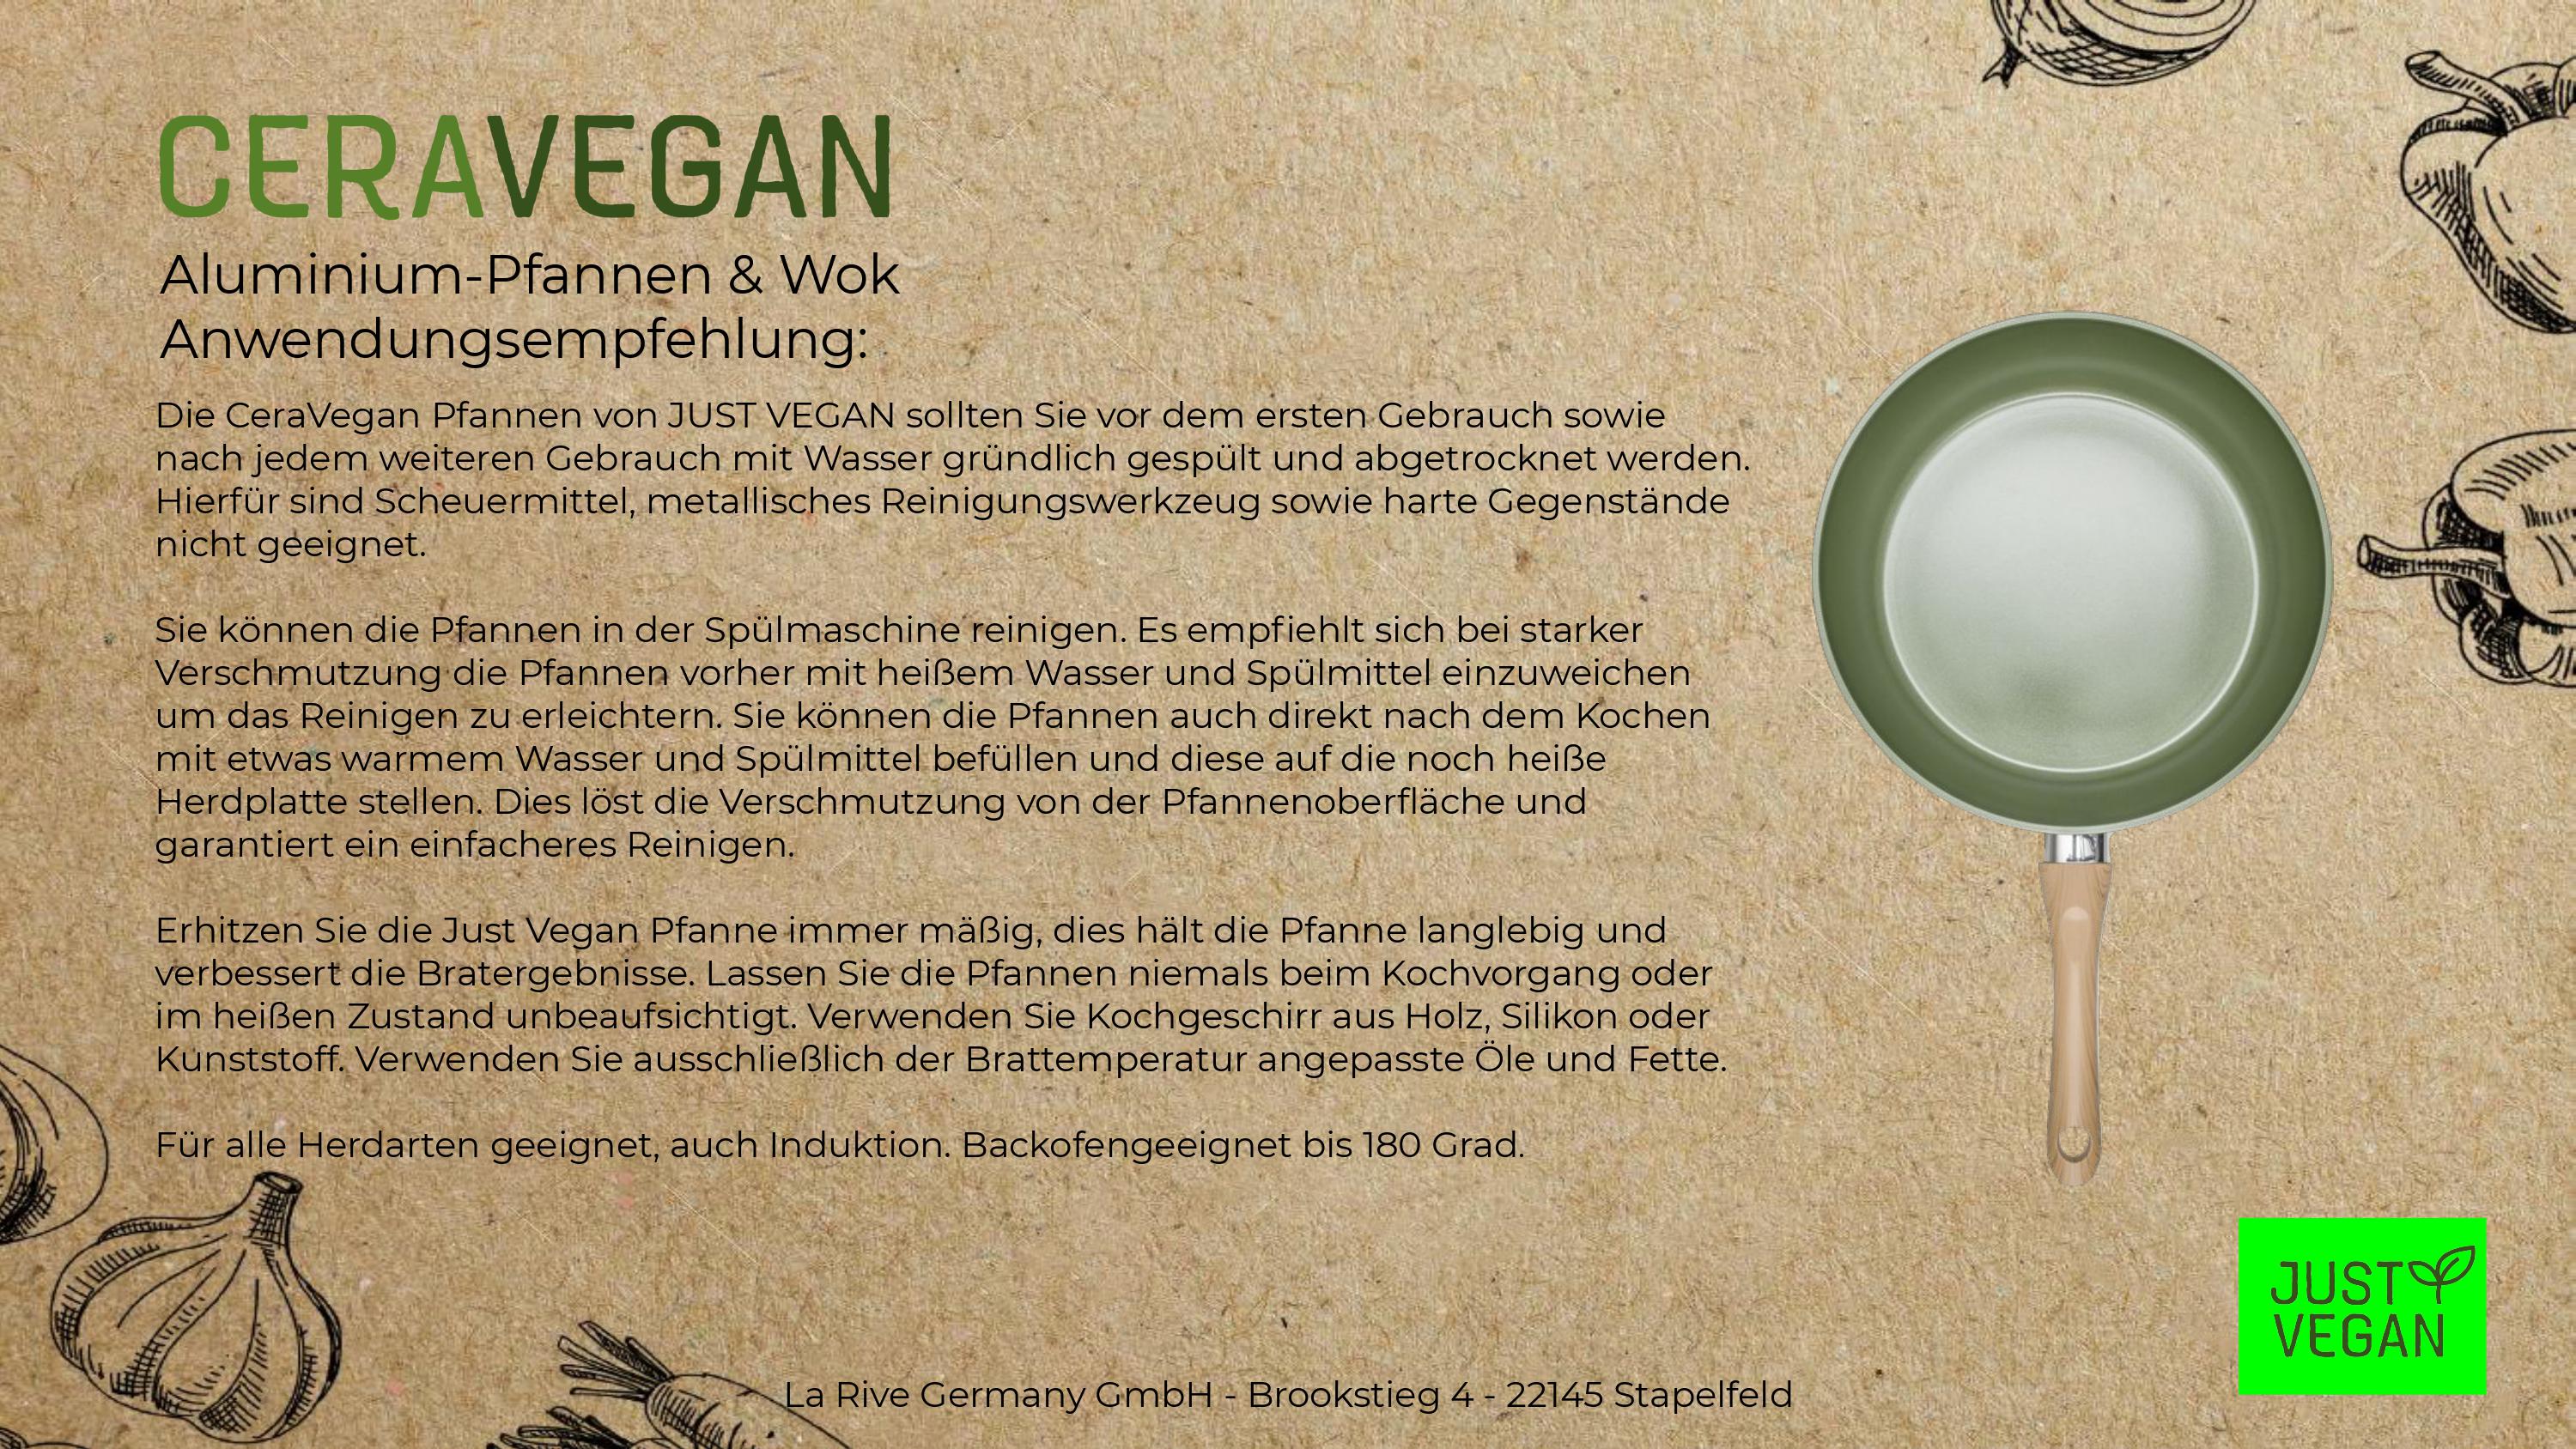 Neuzugänge JUST VEGAN - CeraVegan auf – mit Basis Wok, Keramik-Antihaftbeschichtung Avocado-Öl von pflanzlicher